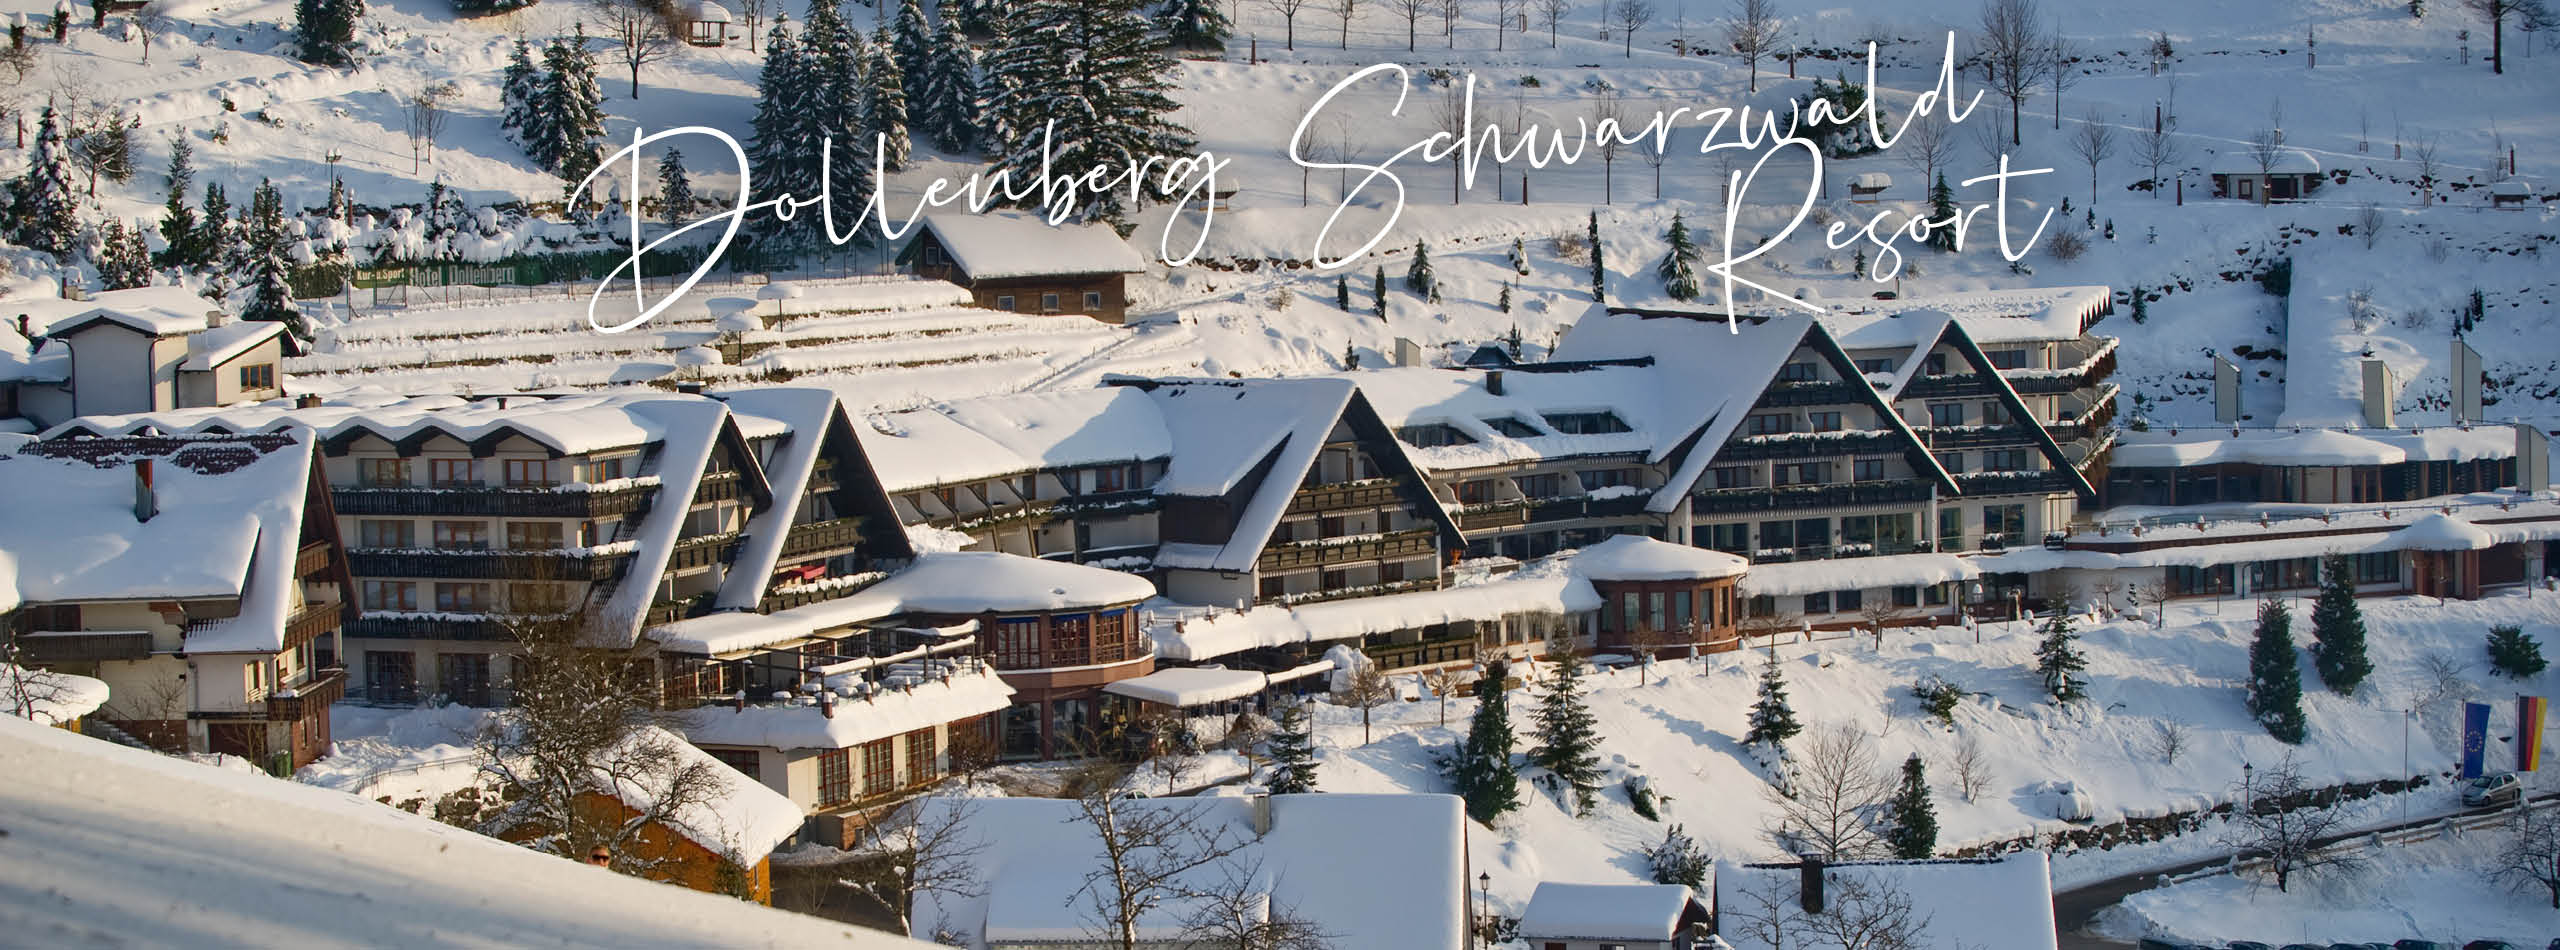 Dollenberg Schwarzwald Resort 5-star superior luxury